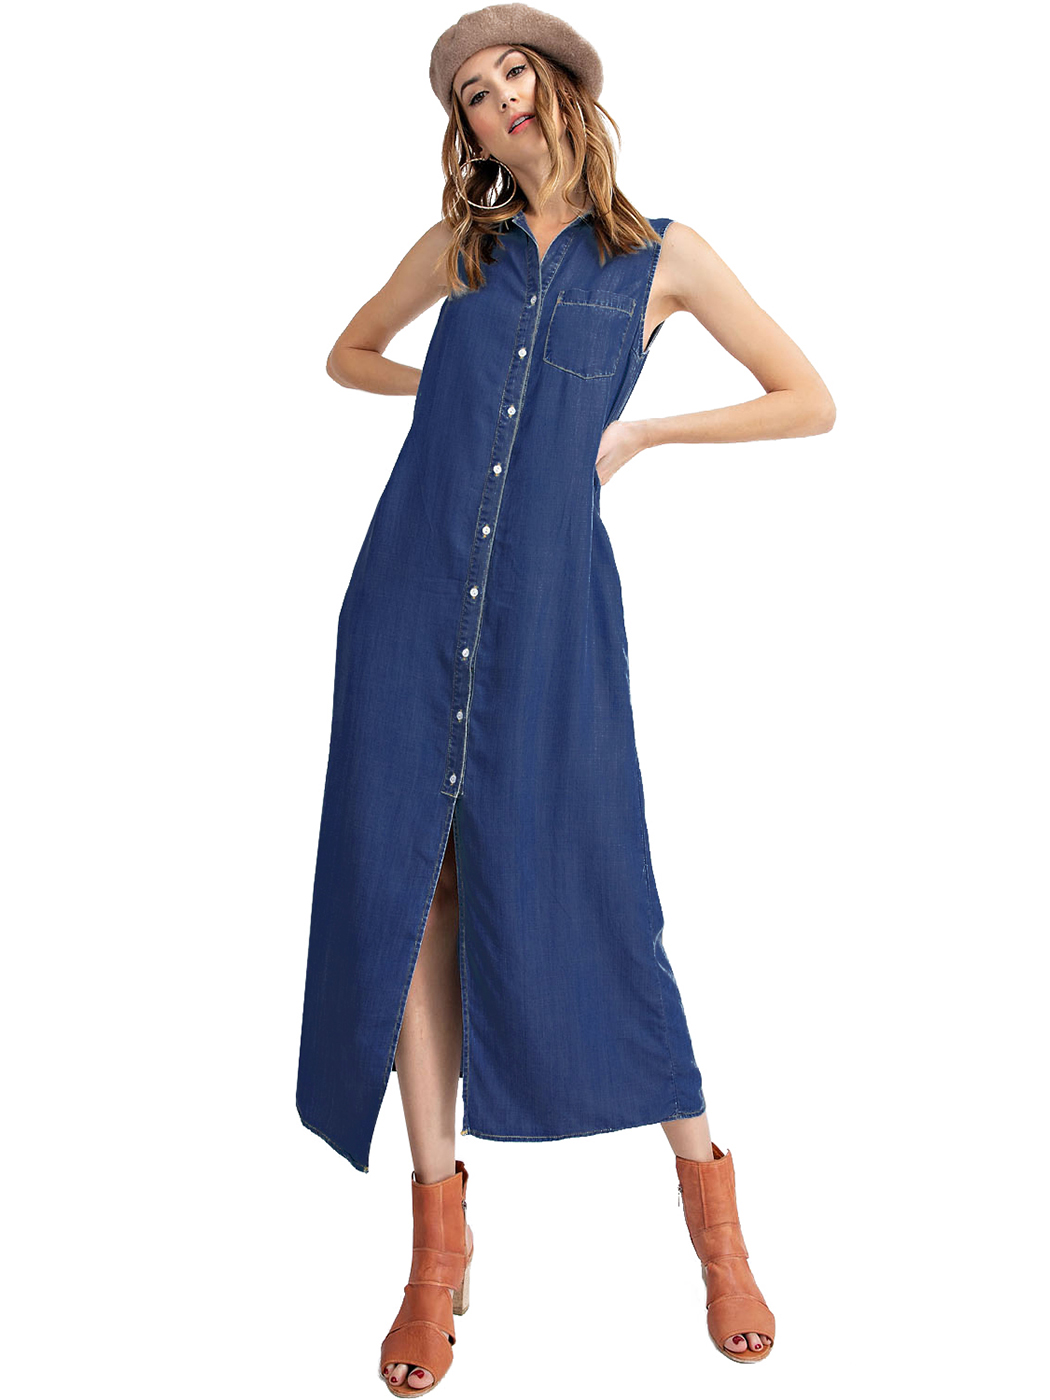 Hot Classic Sleeveless Blue Jean Button Down Denim Pocket Collar Shirt Dress Ebay 